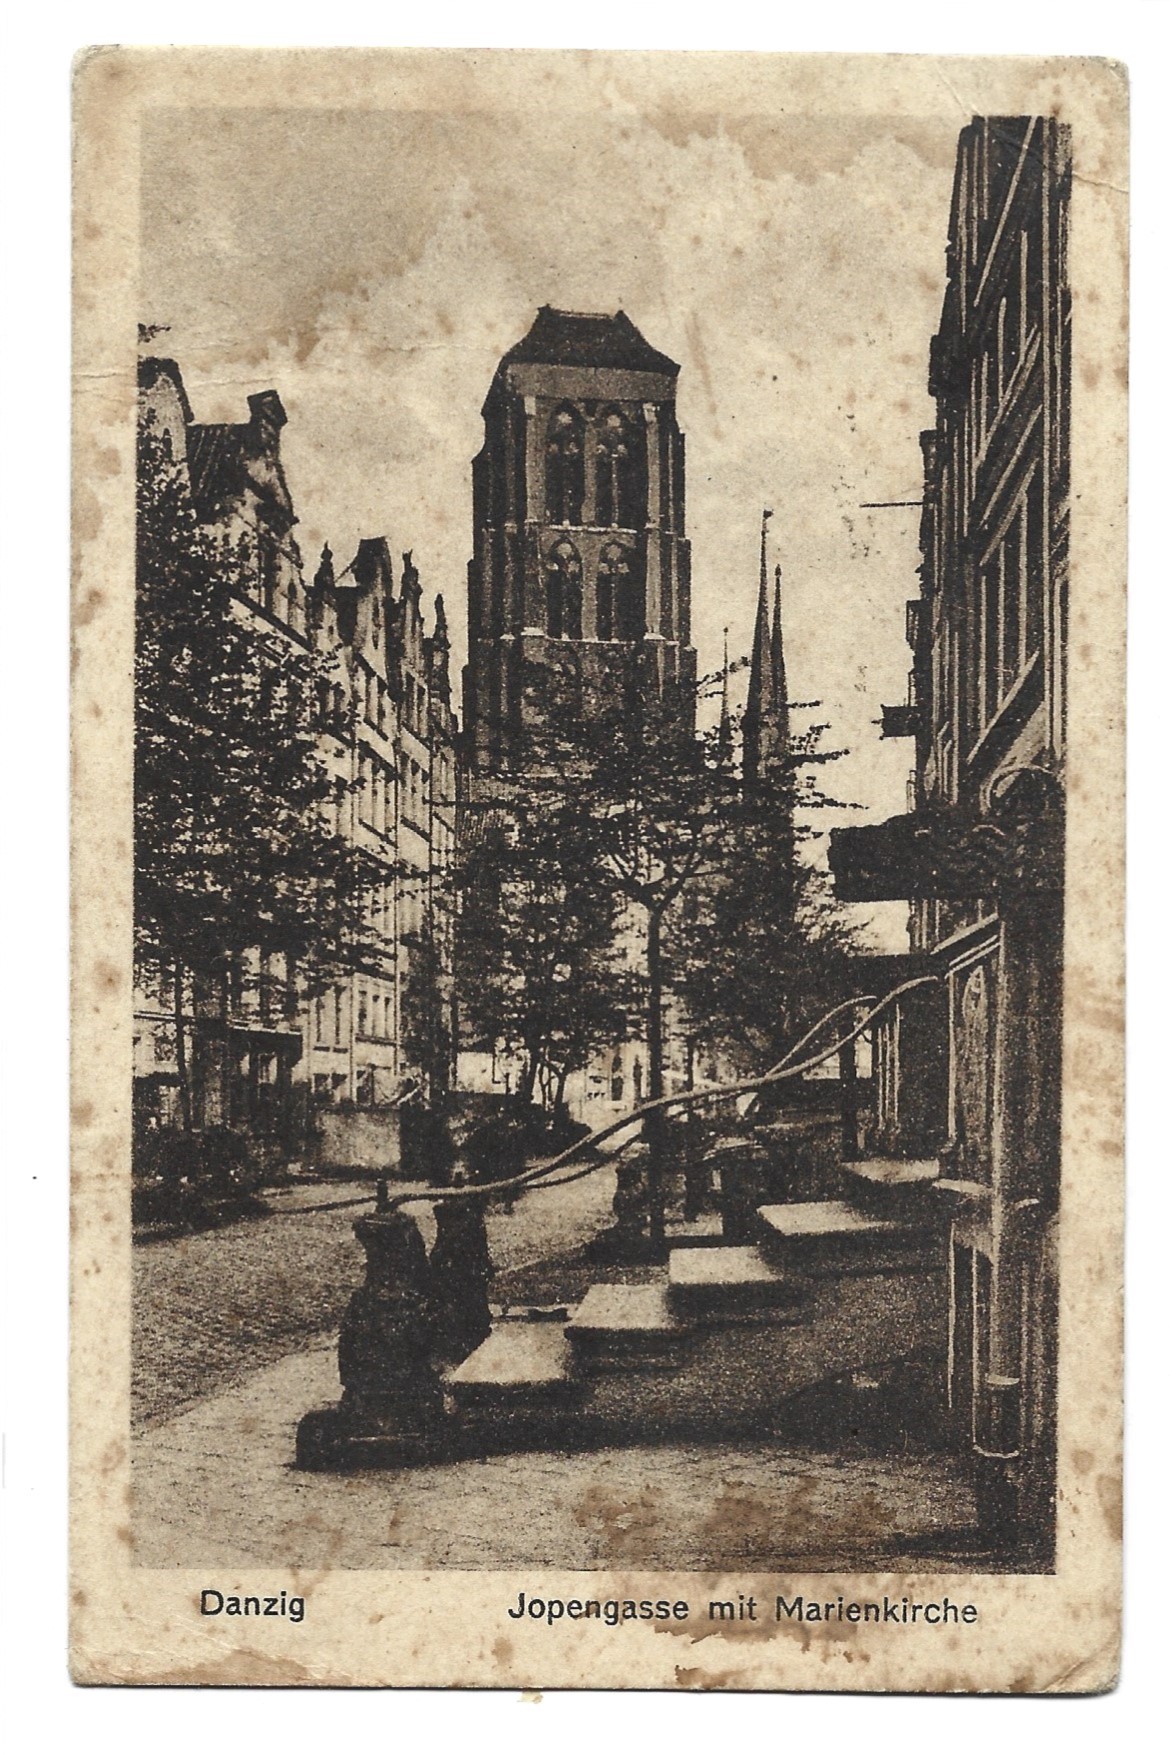 Pocztówka Danzig - Gdańsk, ok. 1920 r.